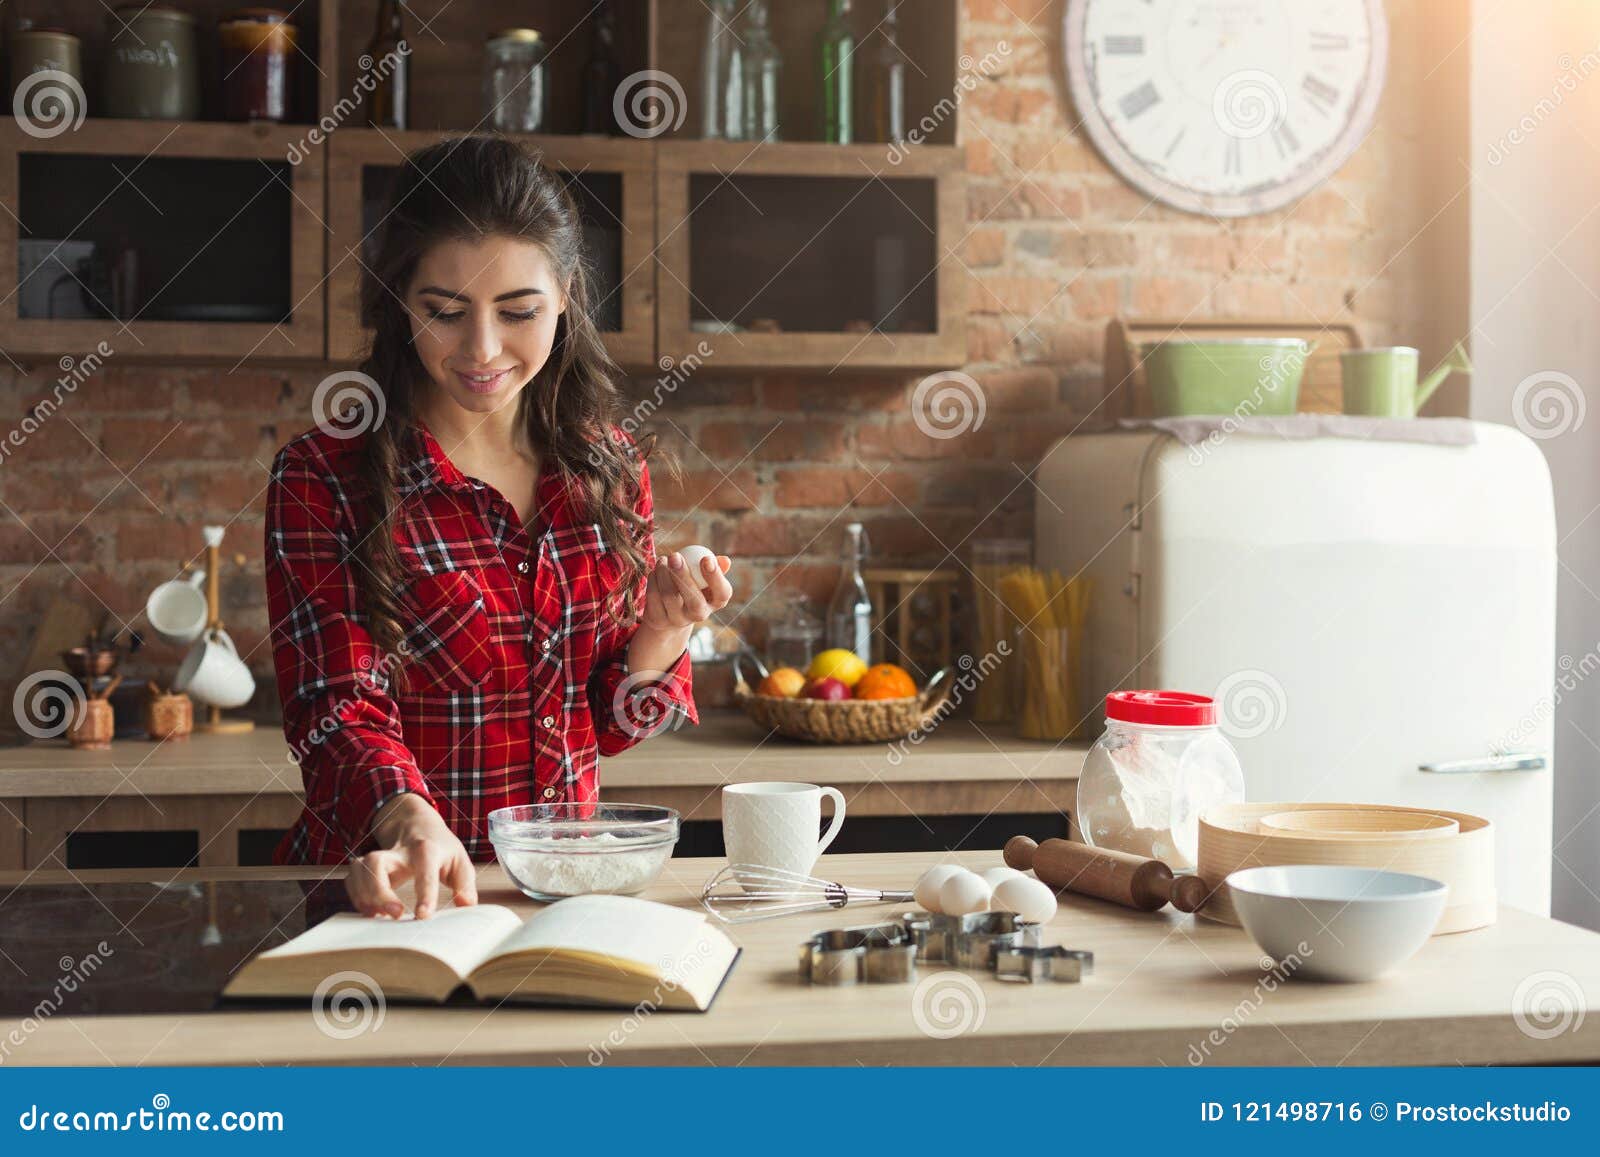 Cuisson heureuse de jeune femme dans la cuisine de grenier. Tarte heureux de cuisson de jeune femme dans la cuisine de grenier à la maison, utilisant le livre avec la recette, l'espace de copie